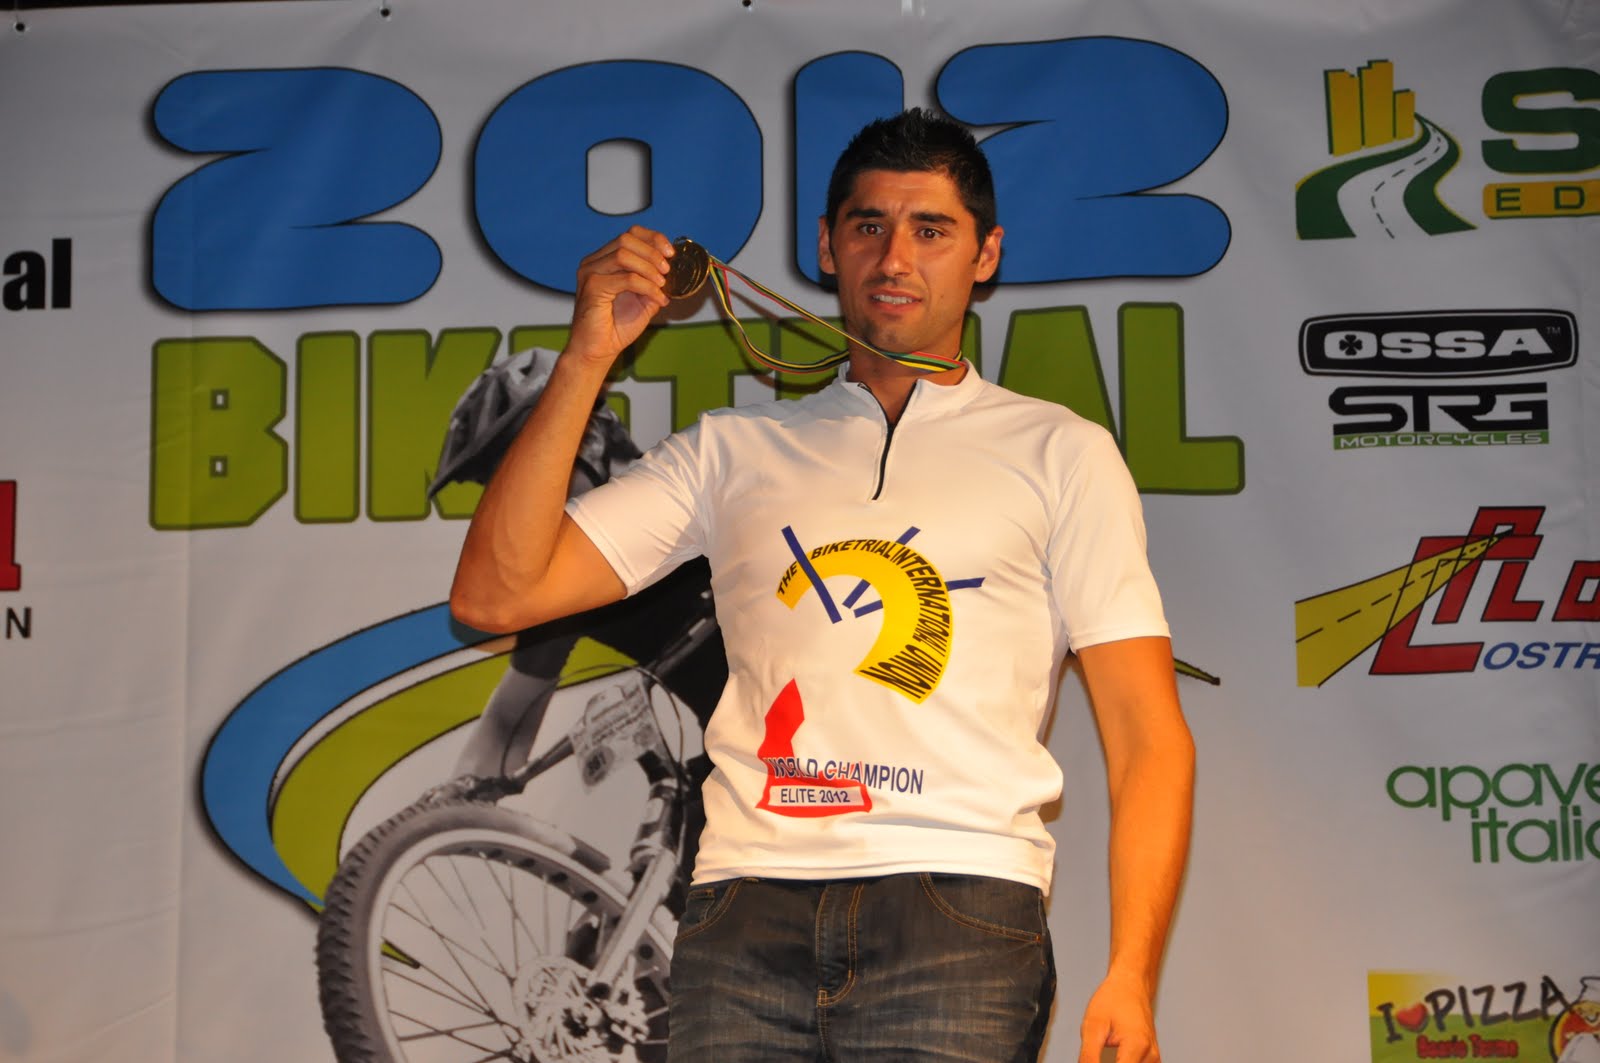 DSC_0560 - 2012 - WBC SONICO Relazione gara